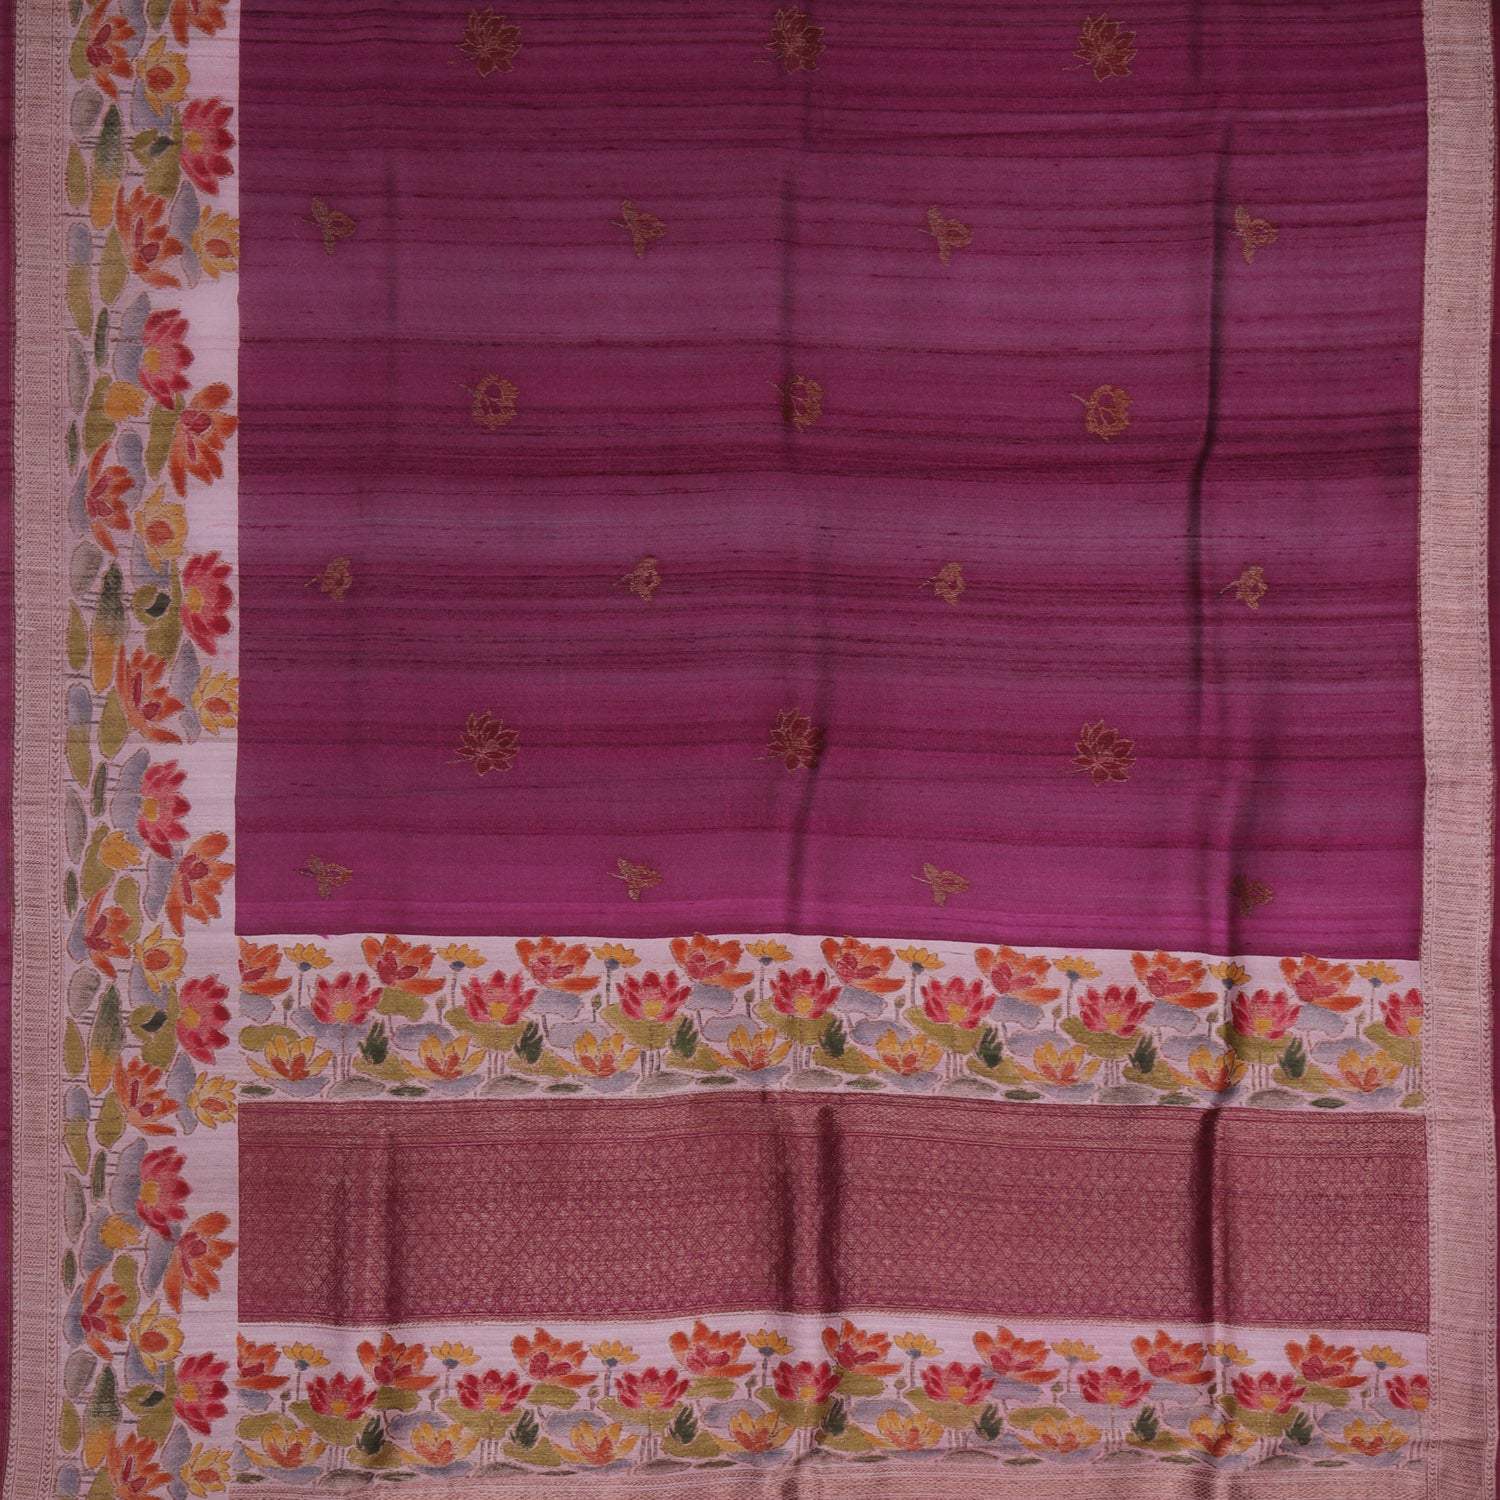 Magenta Pink Tussar Banarasi Silk Handloom Saree With Floral Motifs - Singhania's